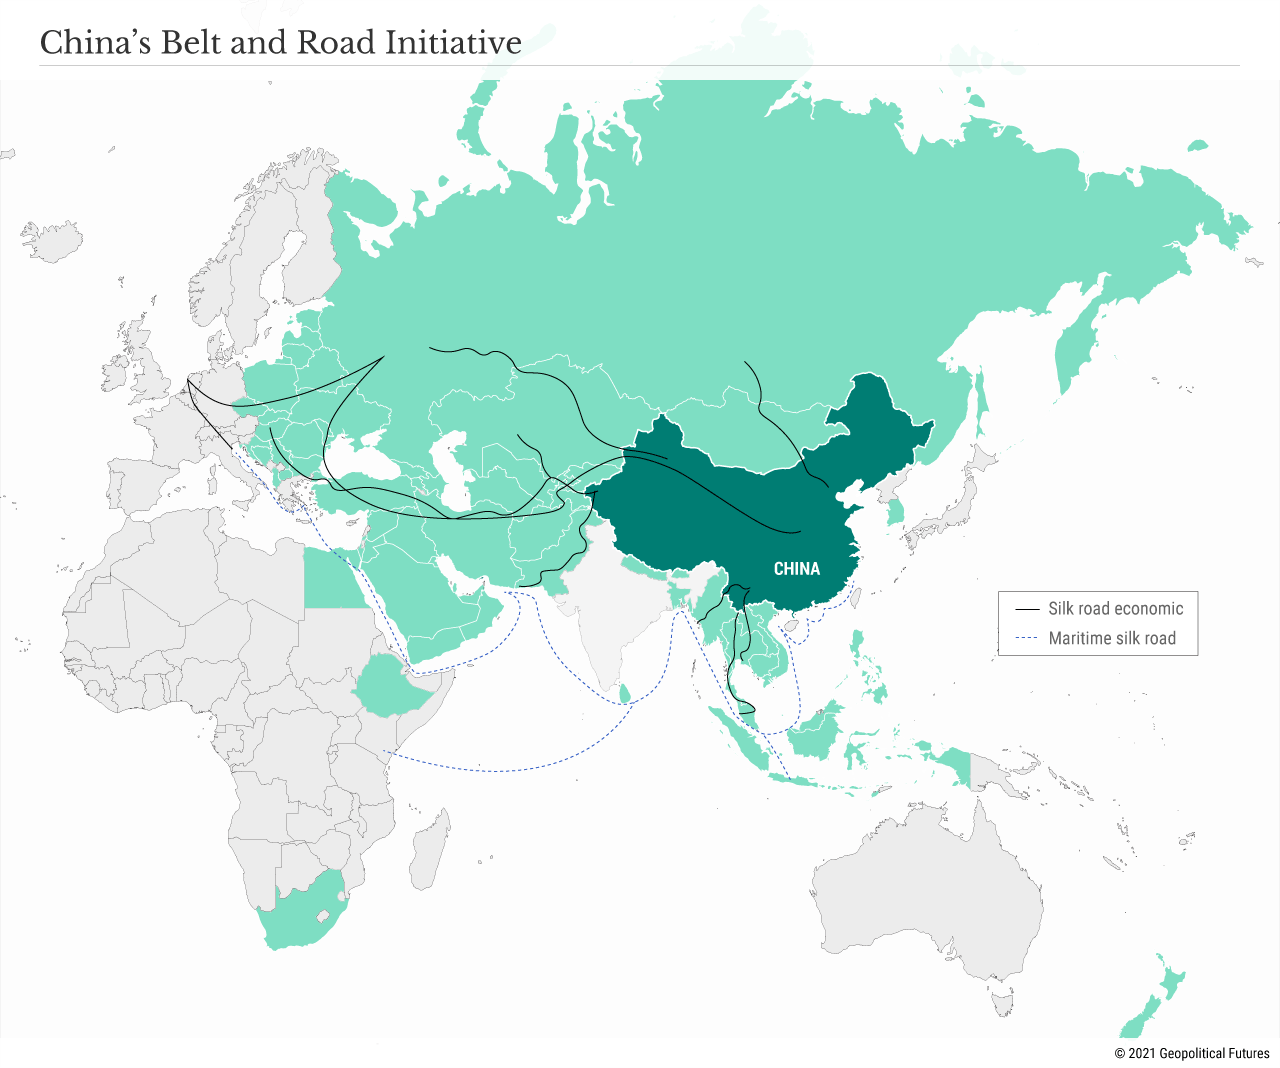 L'iniziativa cinese Belt and Road